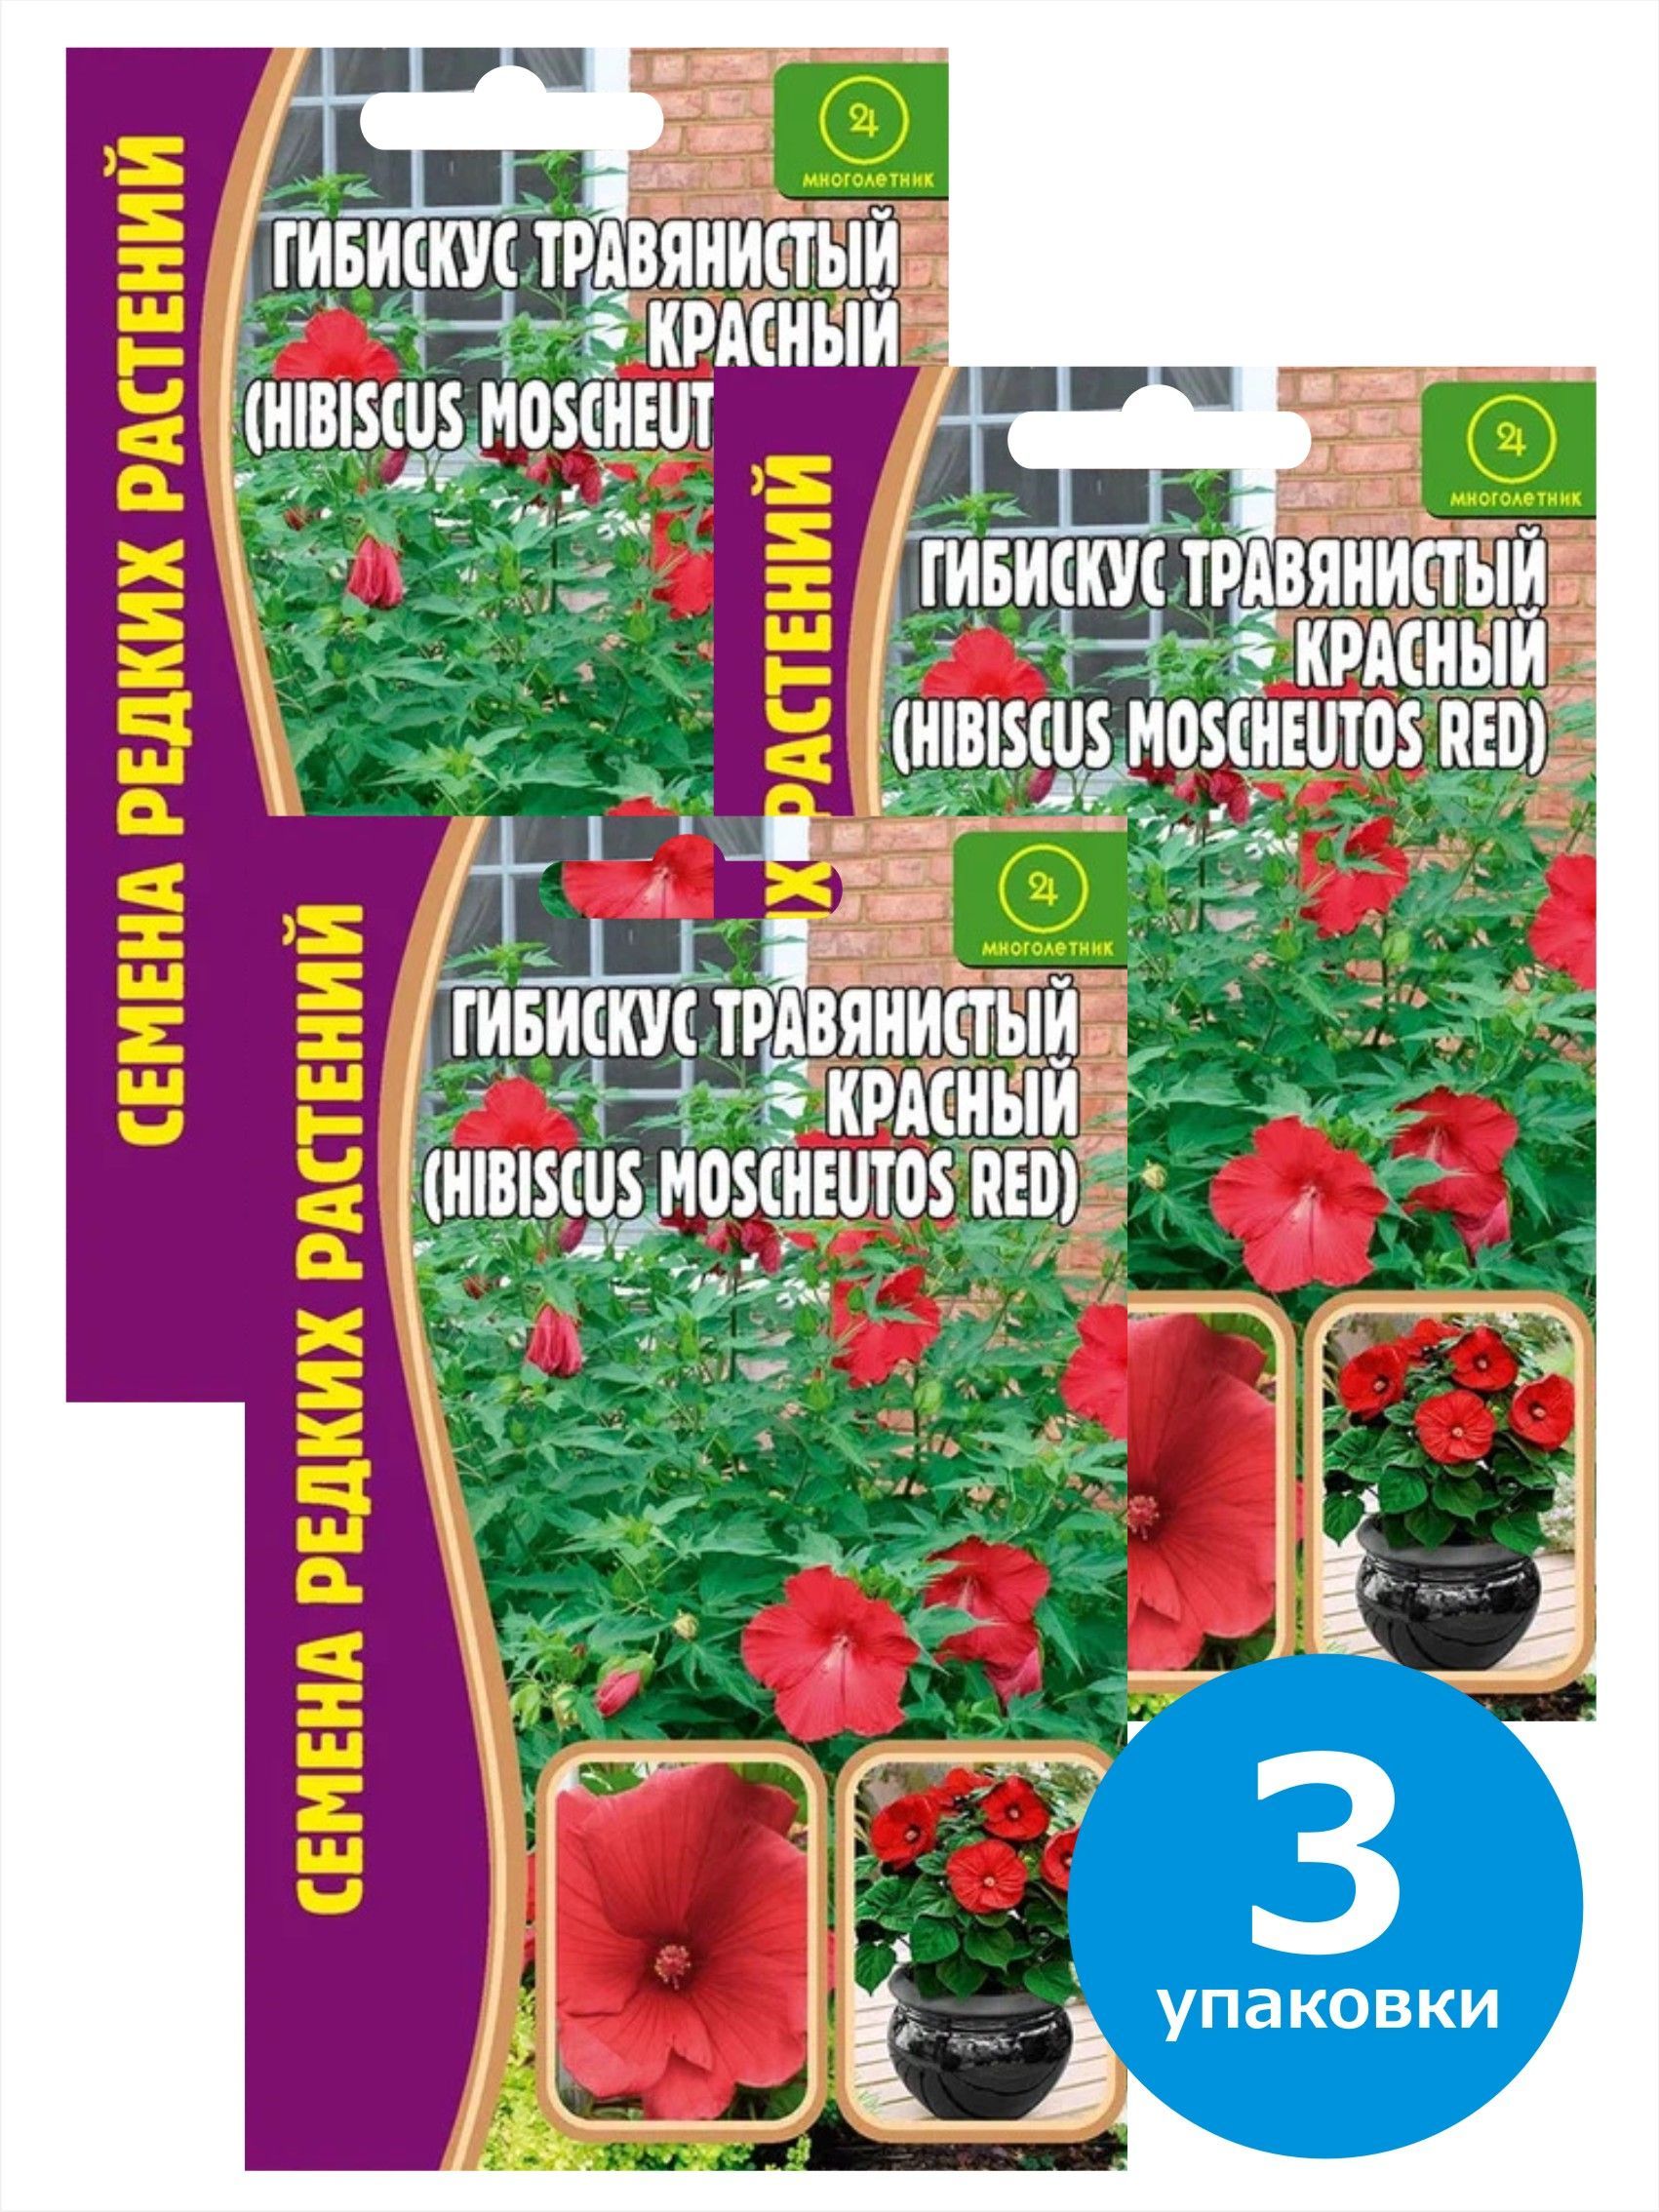 Семена Гибискус травянистый красный Hibiscus Moscheutos, 9928915-3, 3 упаковки по 5 семян